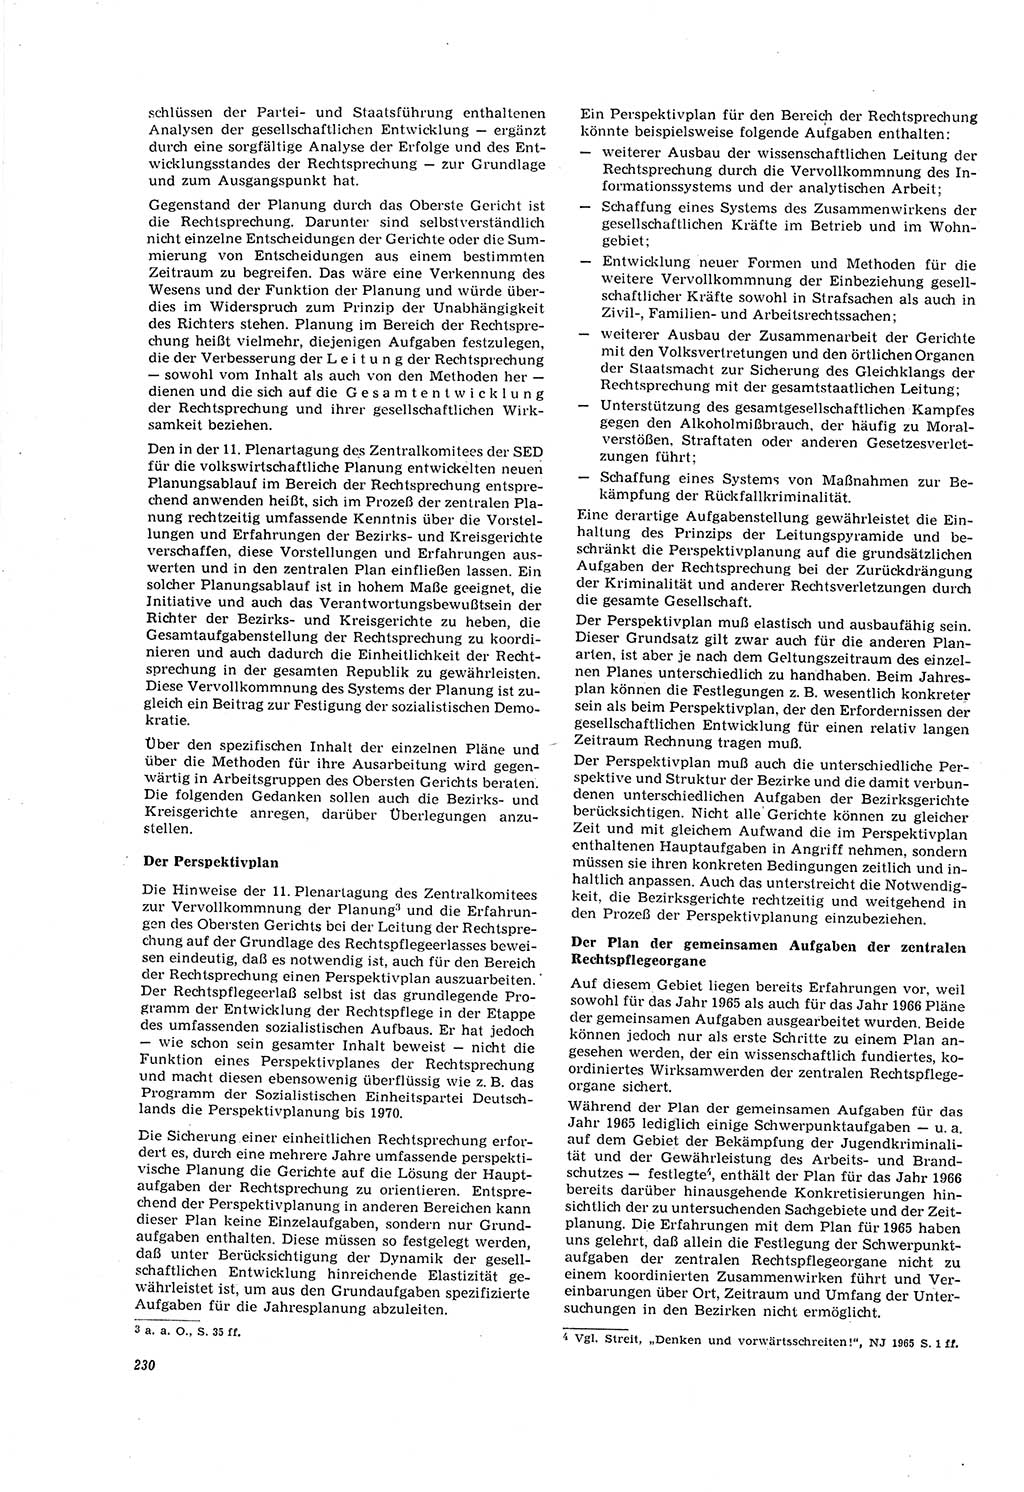 Neue Justiz (NJ), Zeitschrift für Recht und Rechtswissenschaft [Deutsche Demokratische Republik (DDR)], 20. Jahrgang 1966, Seite 230 (NJ DDR 1966, S. 230)